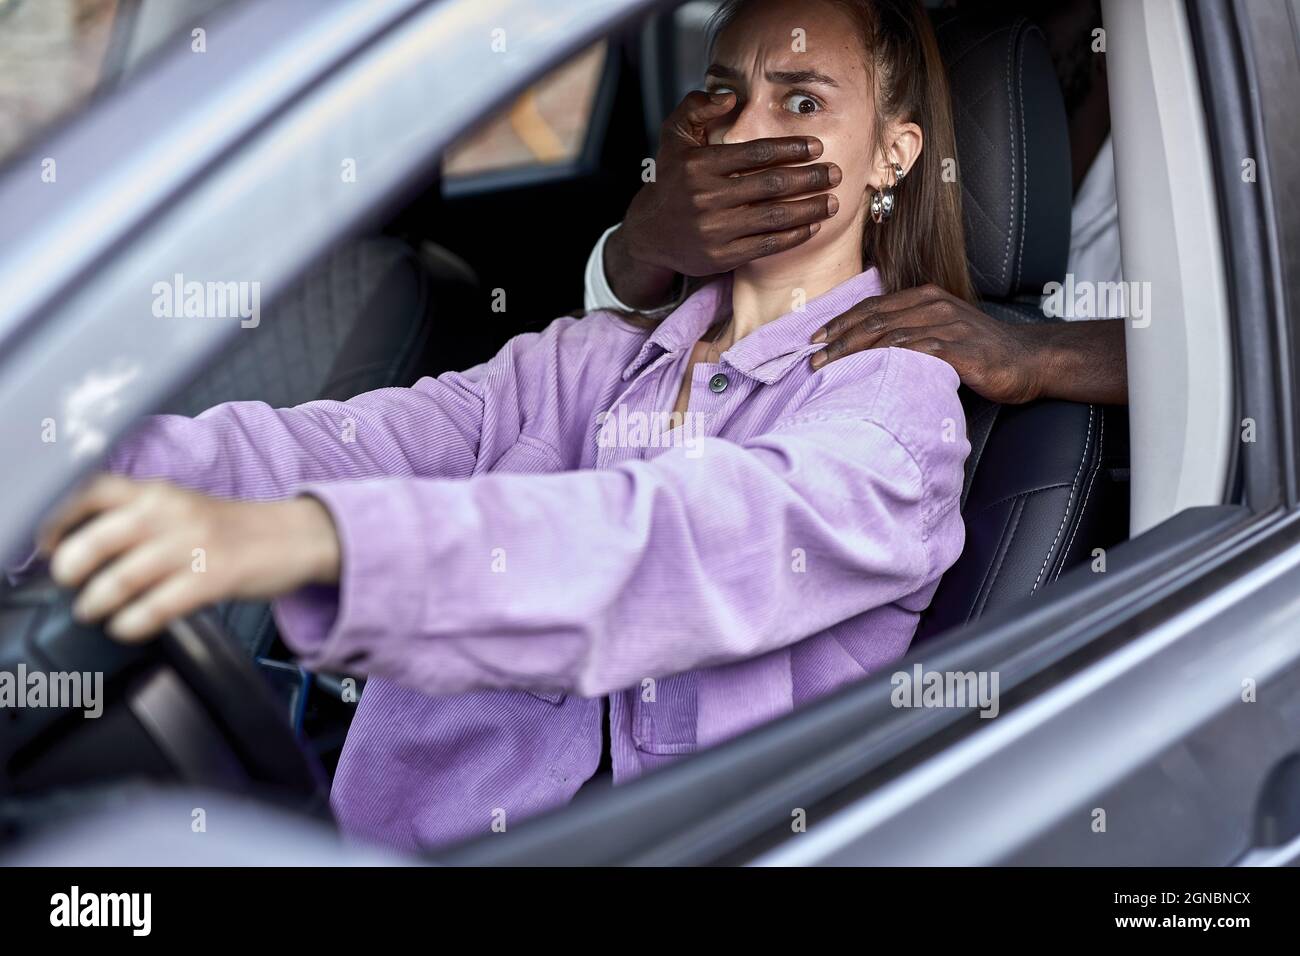 Dangereux noir thie menace une jeune femme effrayée à l'intérieur de la voiture, l'homme africain méconnaissable ferme la bouche de la femme effrayée, vole. S Banque D'Images